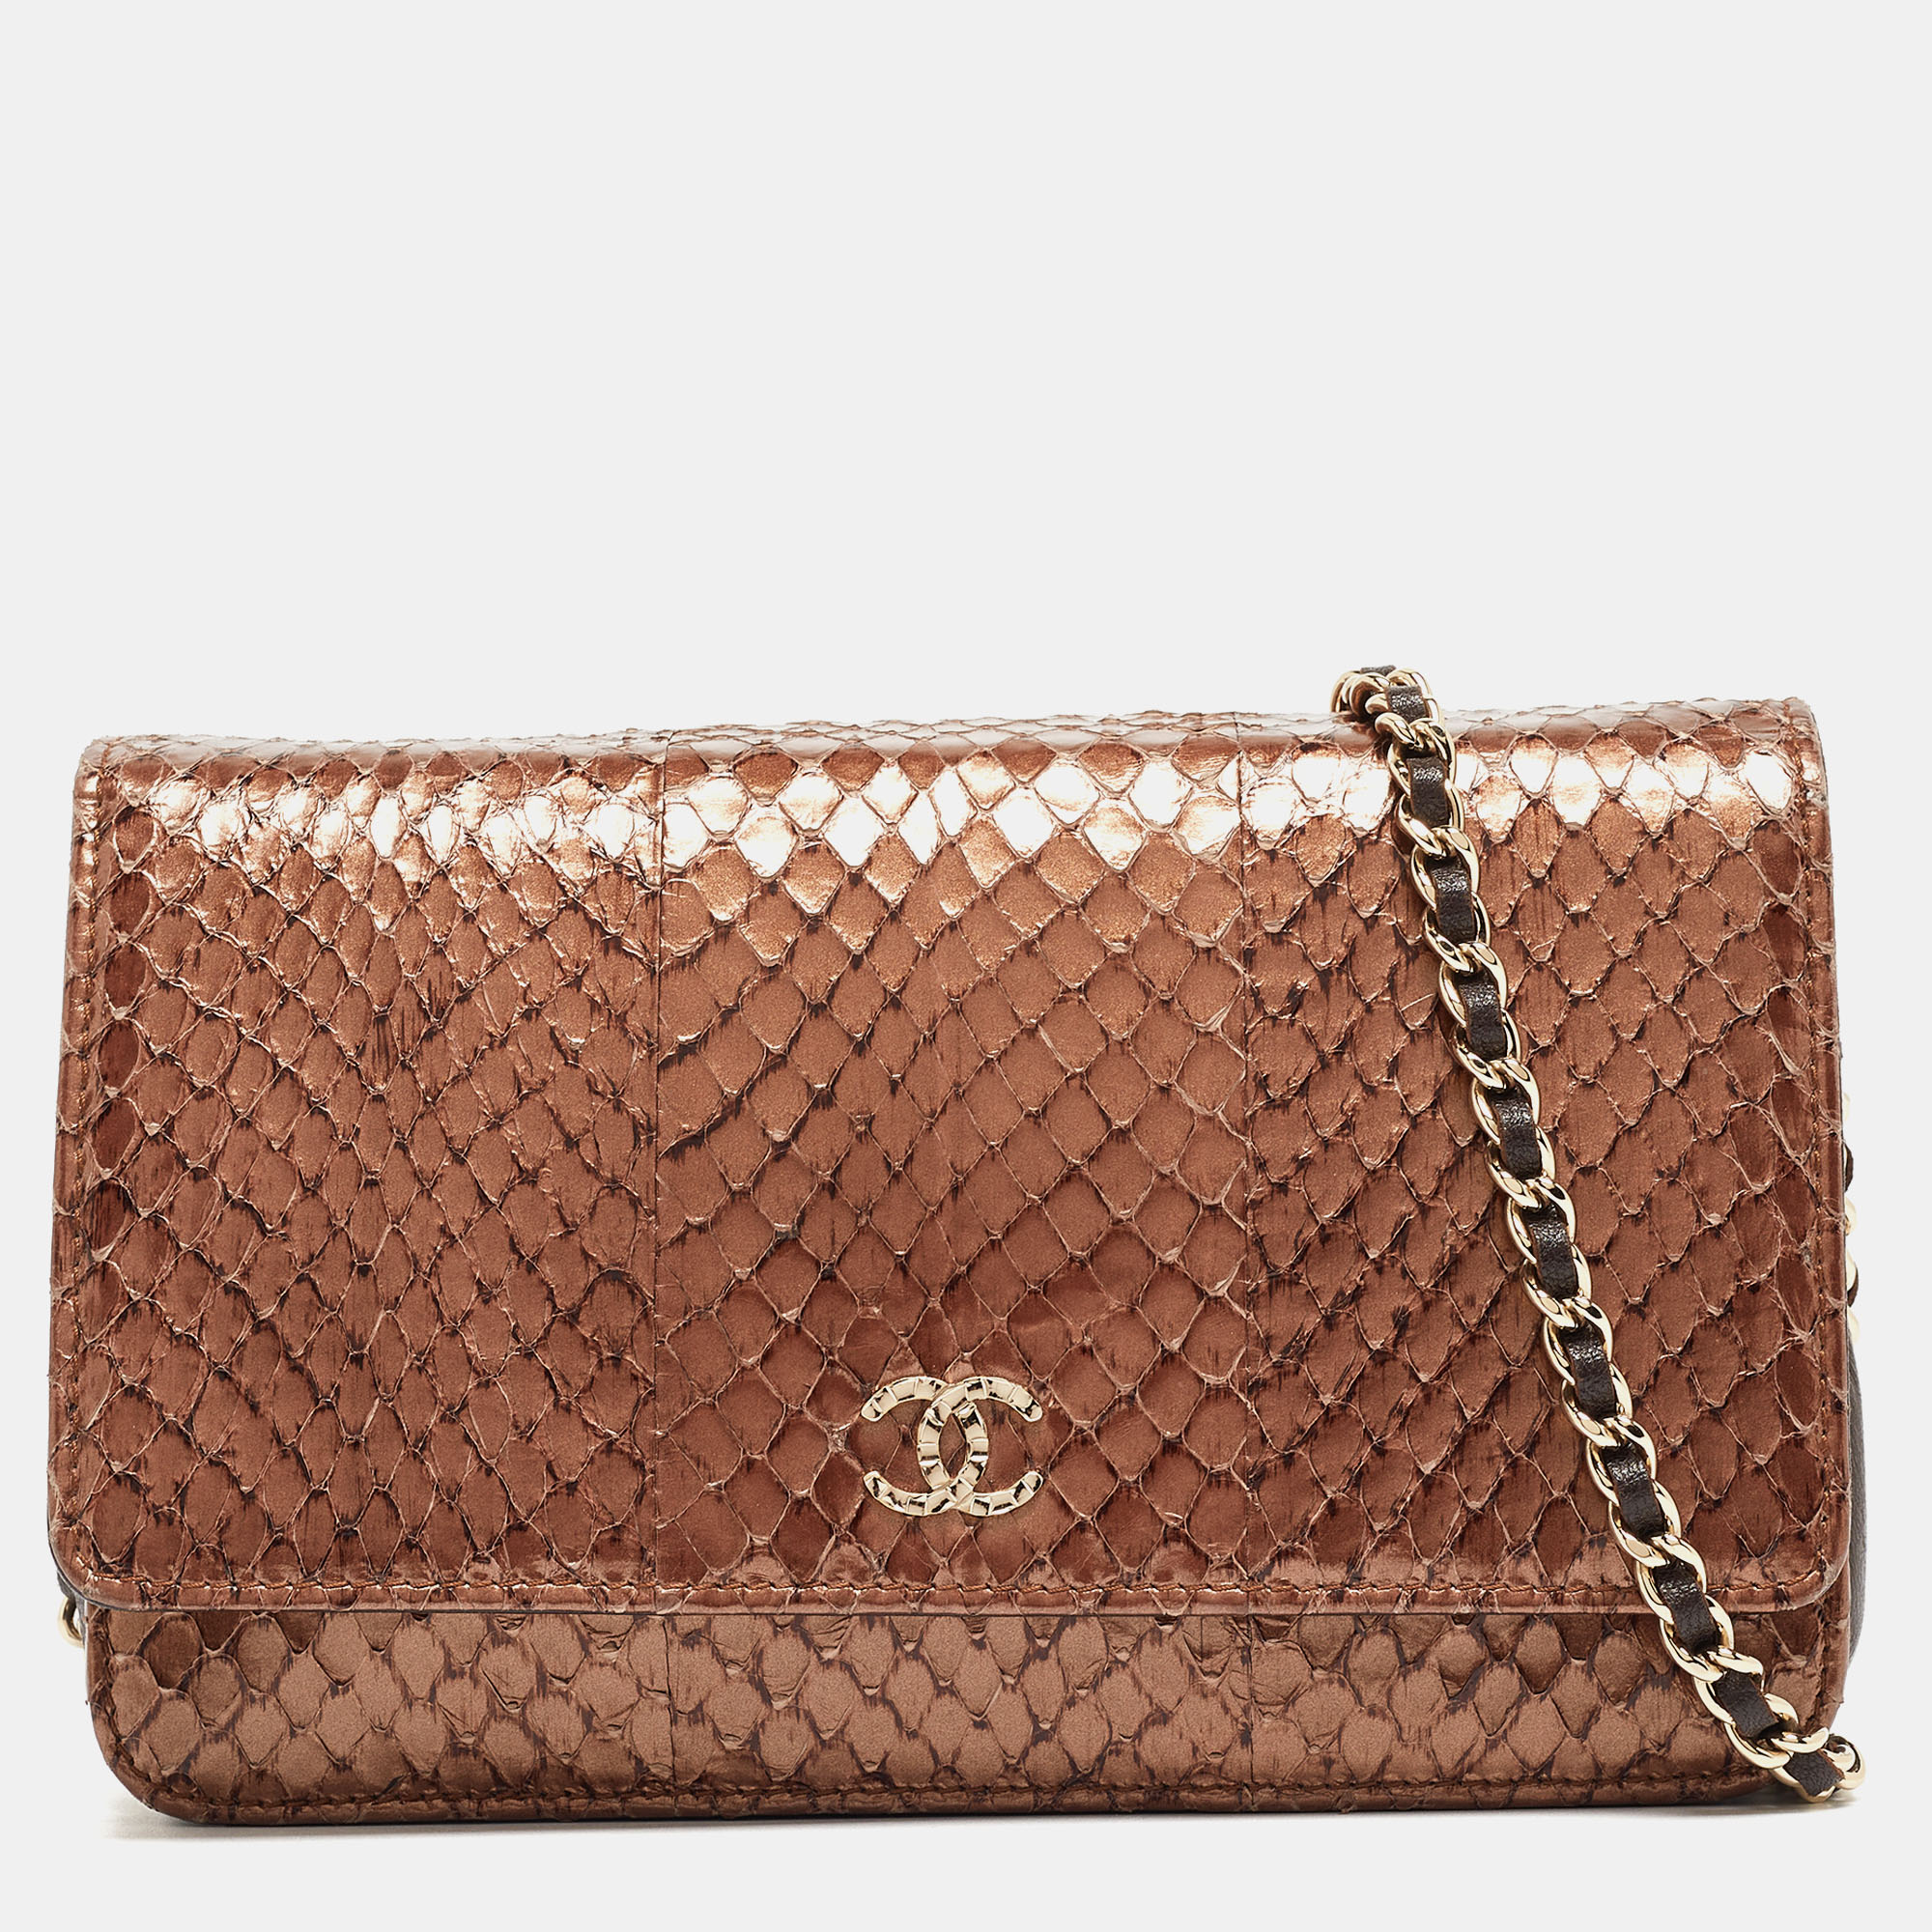 Chanel metallic brown python and leather woc bag